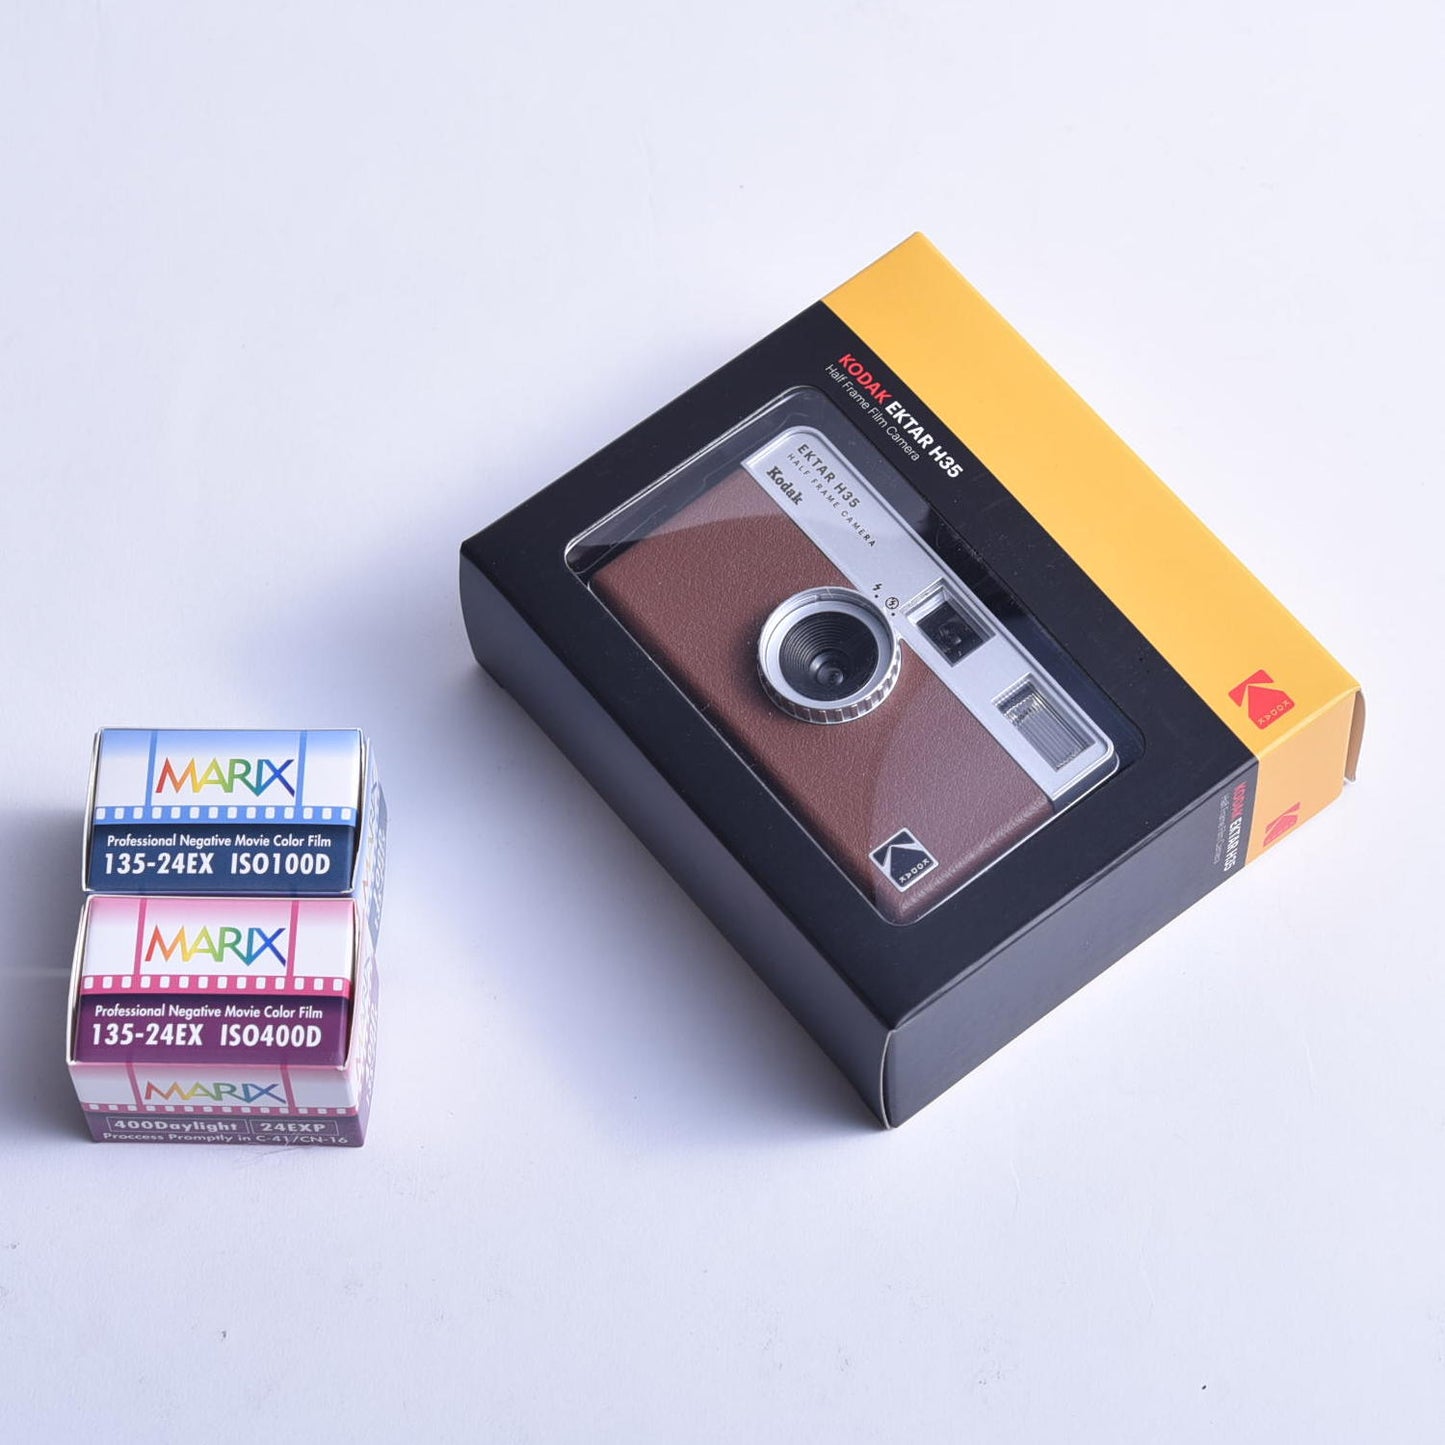 コダック(Kodak) 【国内正規品】フィルムカメラ EKTAR H35 ＜ブラウン＞とマリックスカラー2本セット